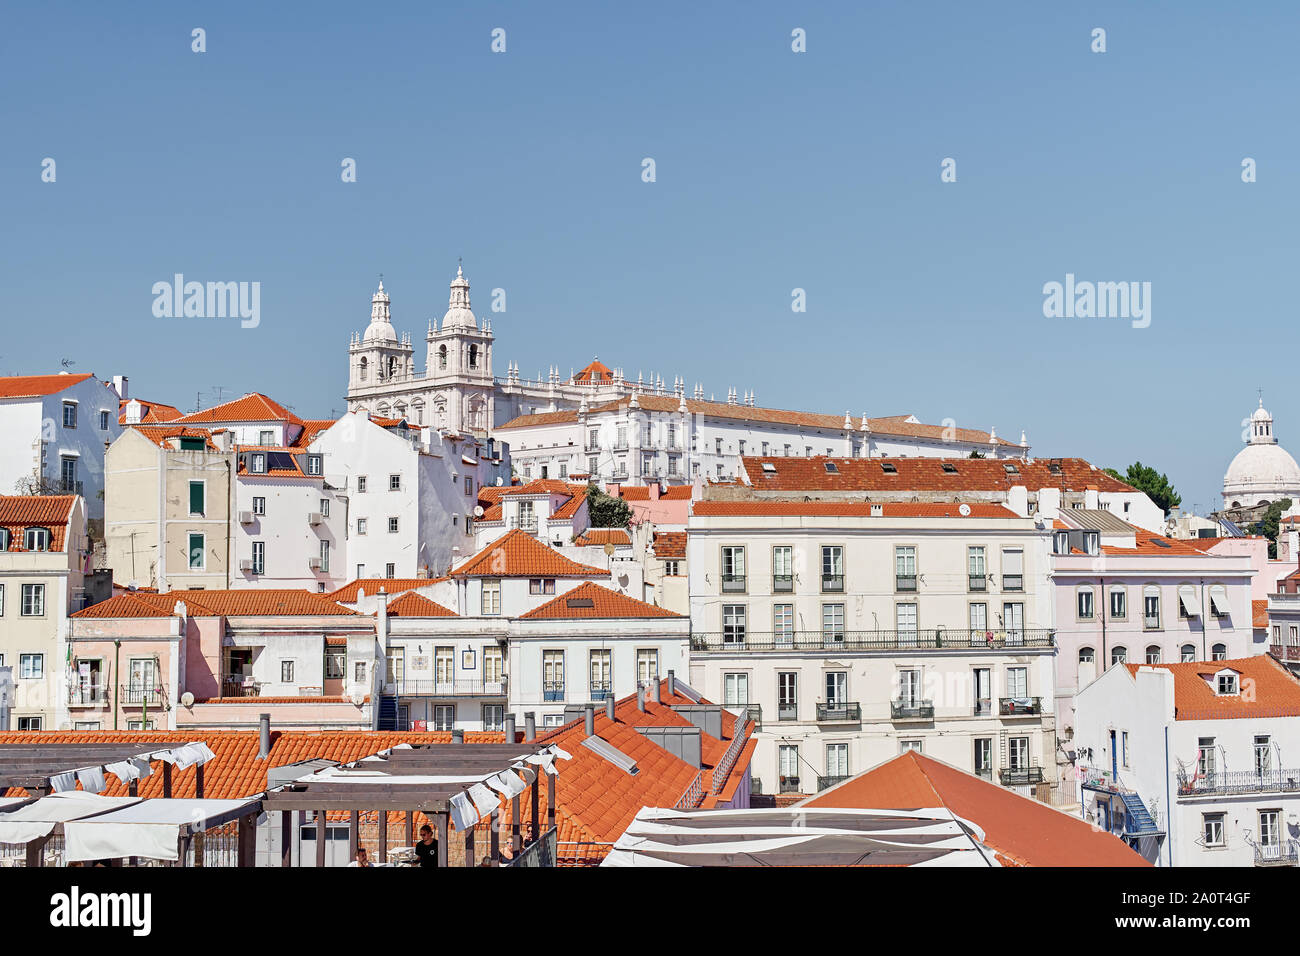 Lisbonne, Portugal - 27 août 2019 : vue sur la vieille ville de Lisbonne, à partir de la plate-forme viweing Miradouro das Portas do Sol Banque D'Images